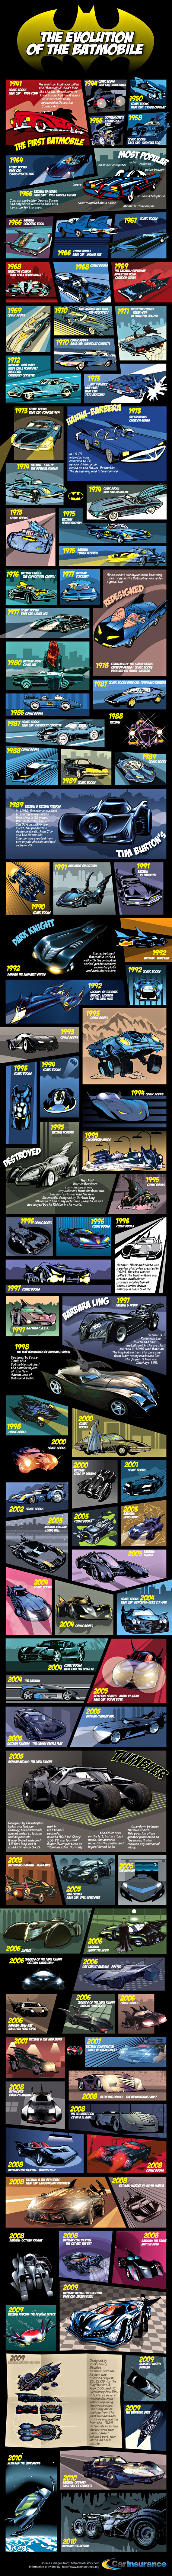 Batmobile History